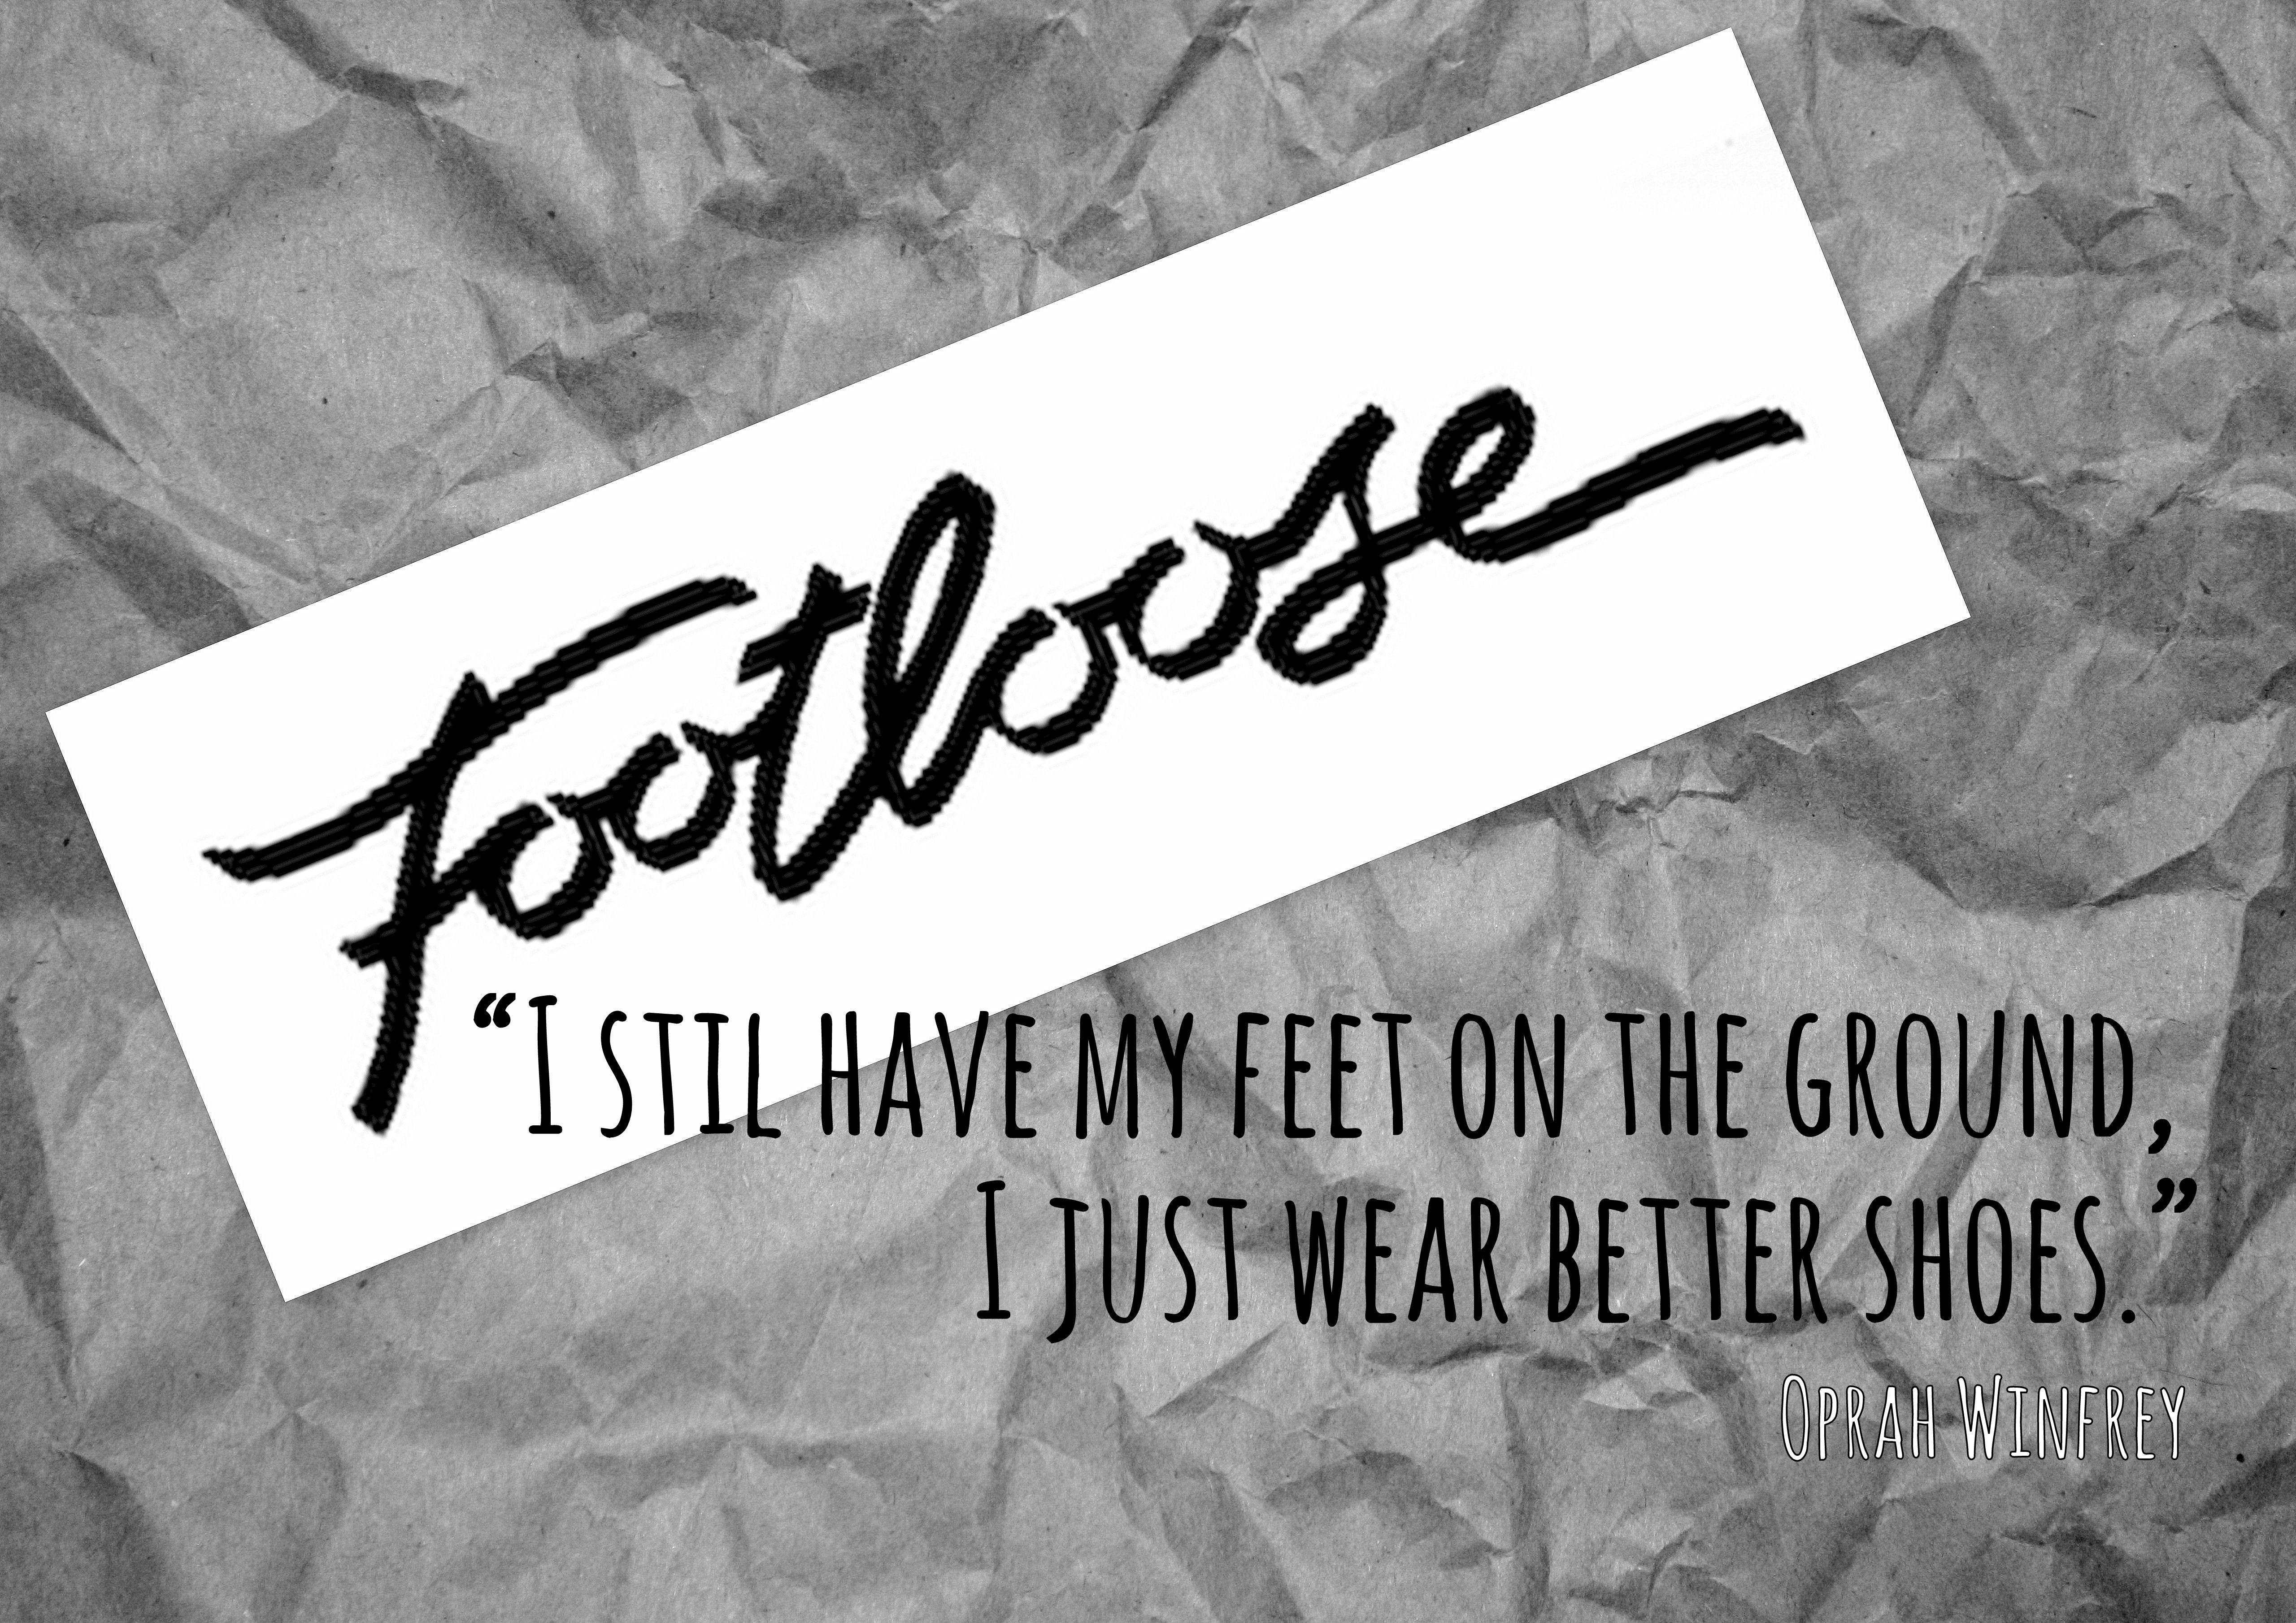 Footloose Logo - FOOTLOOSE logo. FOOTLOOSE. Home decor, Decor, Signs